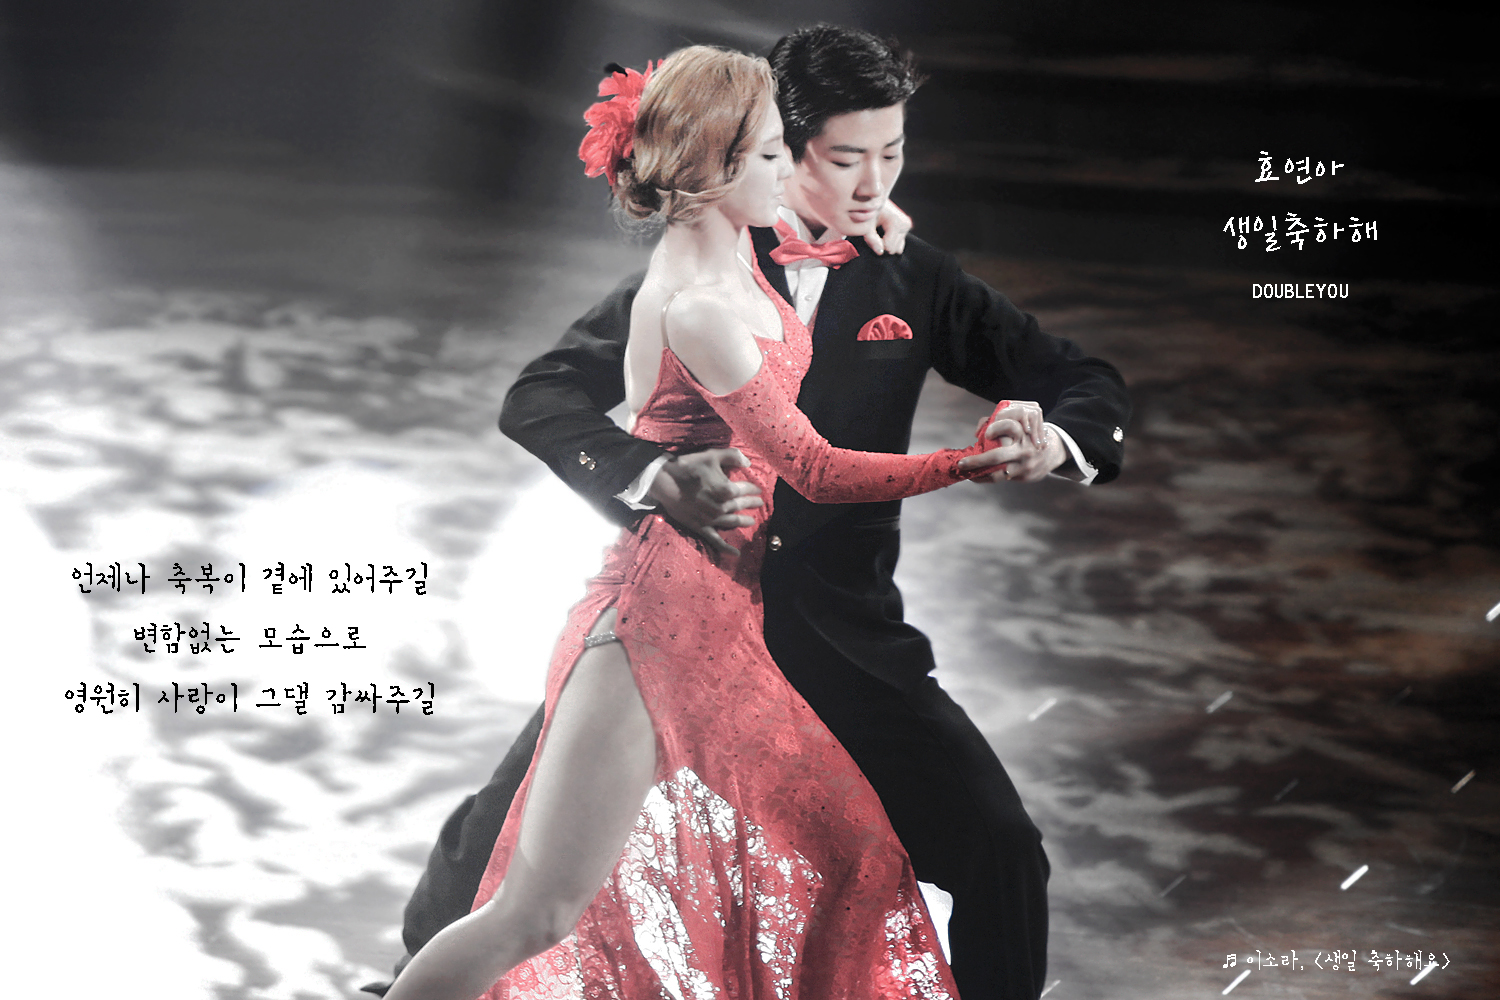 [OTHER][21-07-2012]Hình ảnh từ đêm chung kết "Dancing With The Star 2" tối qua của HyoYeon - Page 2 26081B4655FF92980E8474